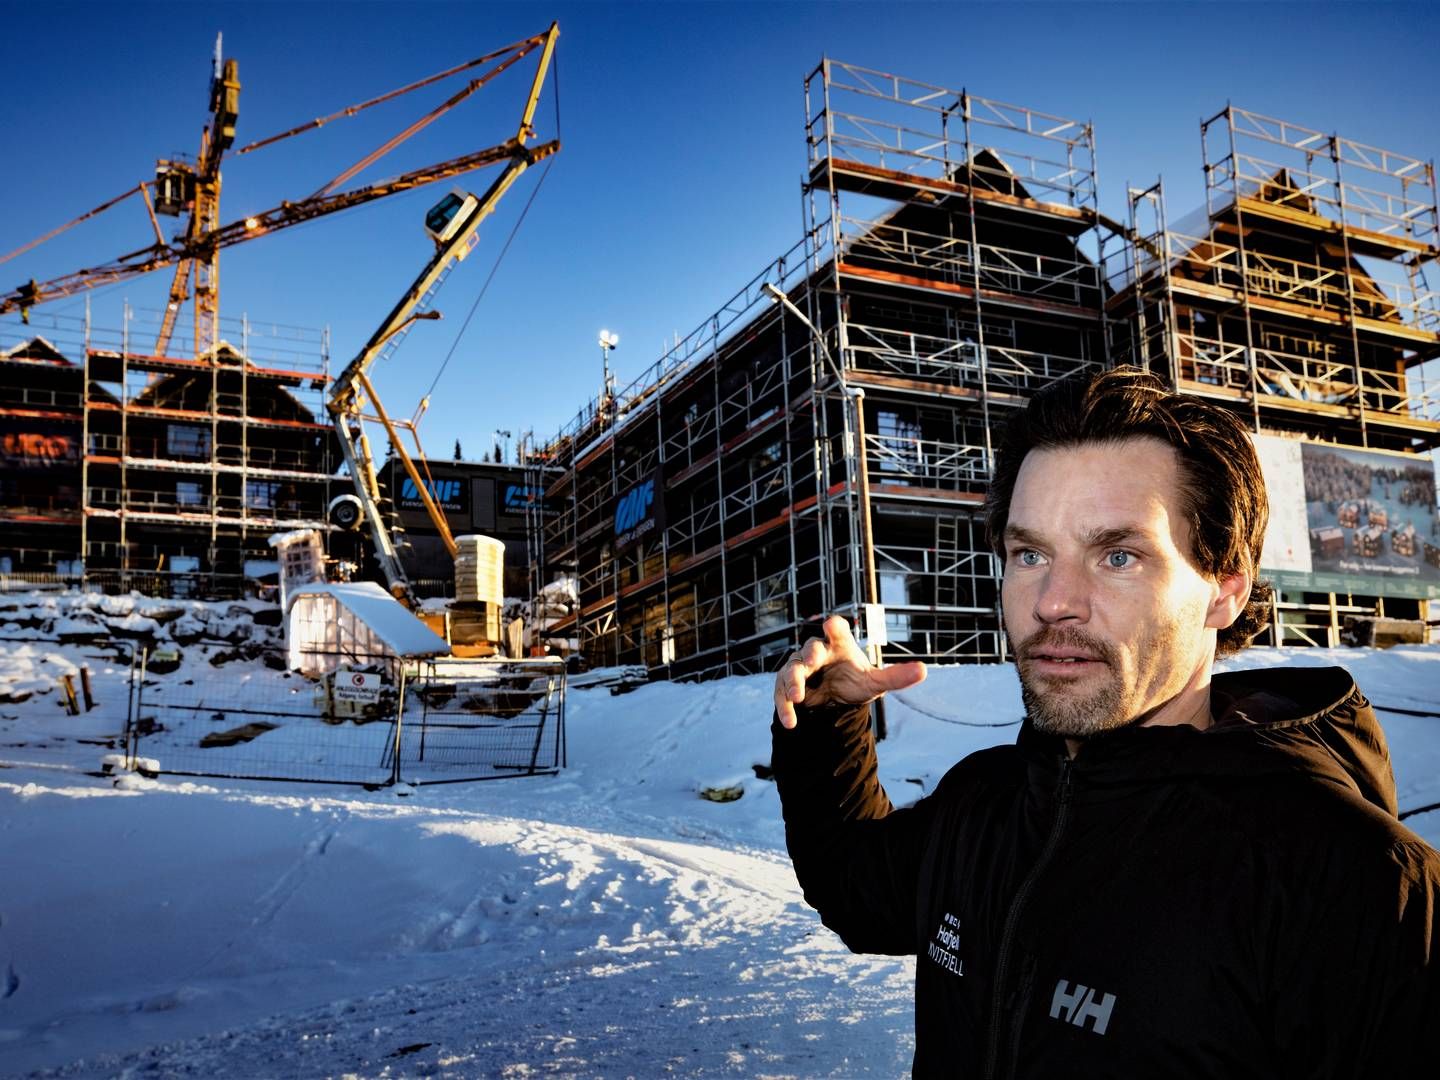 MOT HIMMELEN: Det bygges stadig ut i Hafjell takket være Anders Buchardt og AB Invest. På bildet ser vi det neste byggetrinnet til Favn-prosjektet, som stammer fra et samarbeid mellom Buchardt og Aksel Lund Svindal. | Foto: Geir Olsen